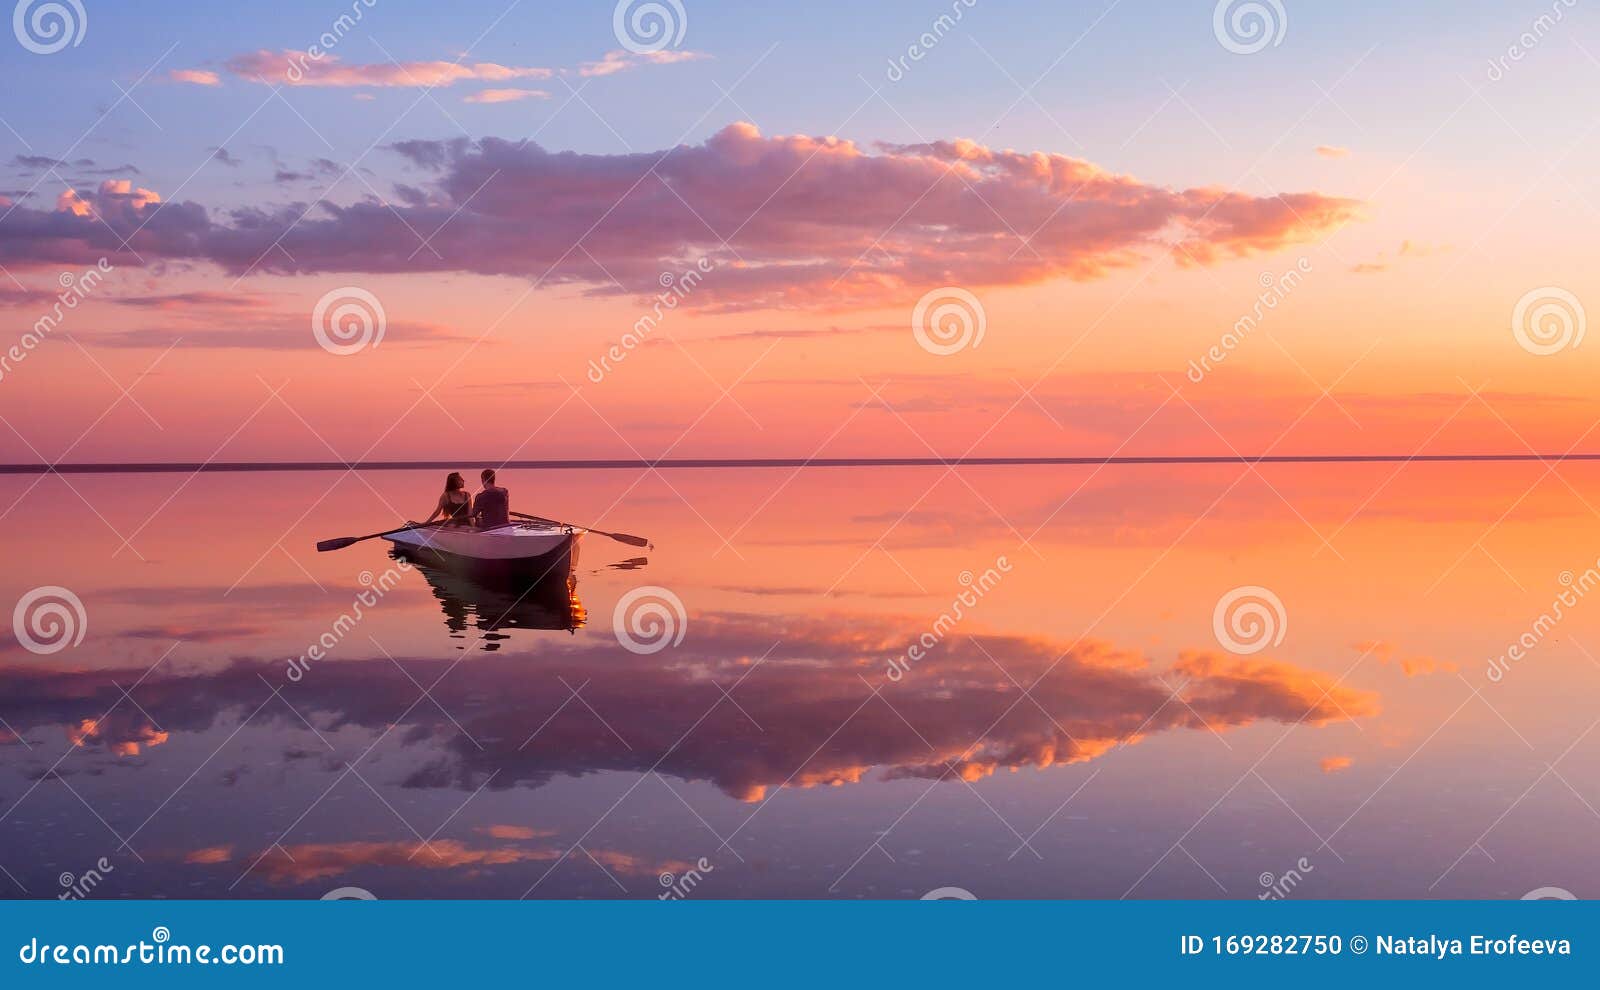 Beautiful Girl, Sunset, Boat, Lake, Dreaming Wallpaper